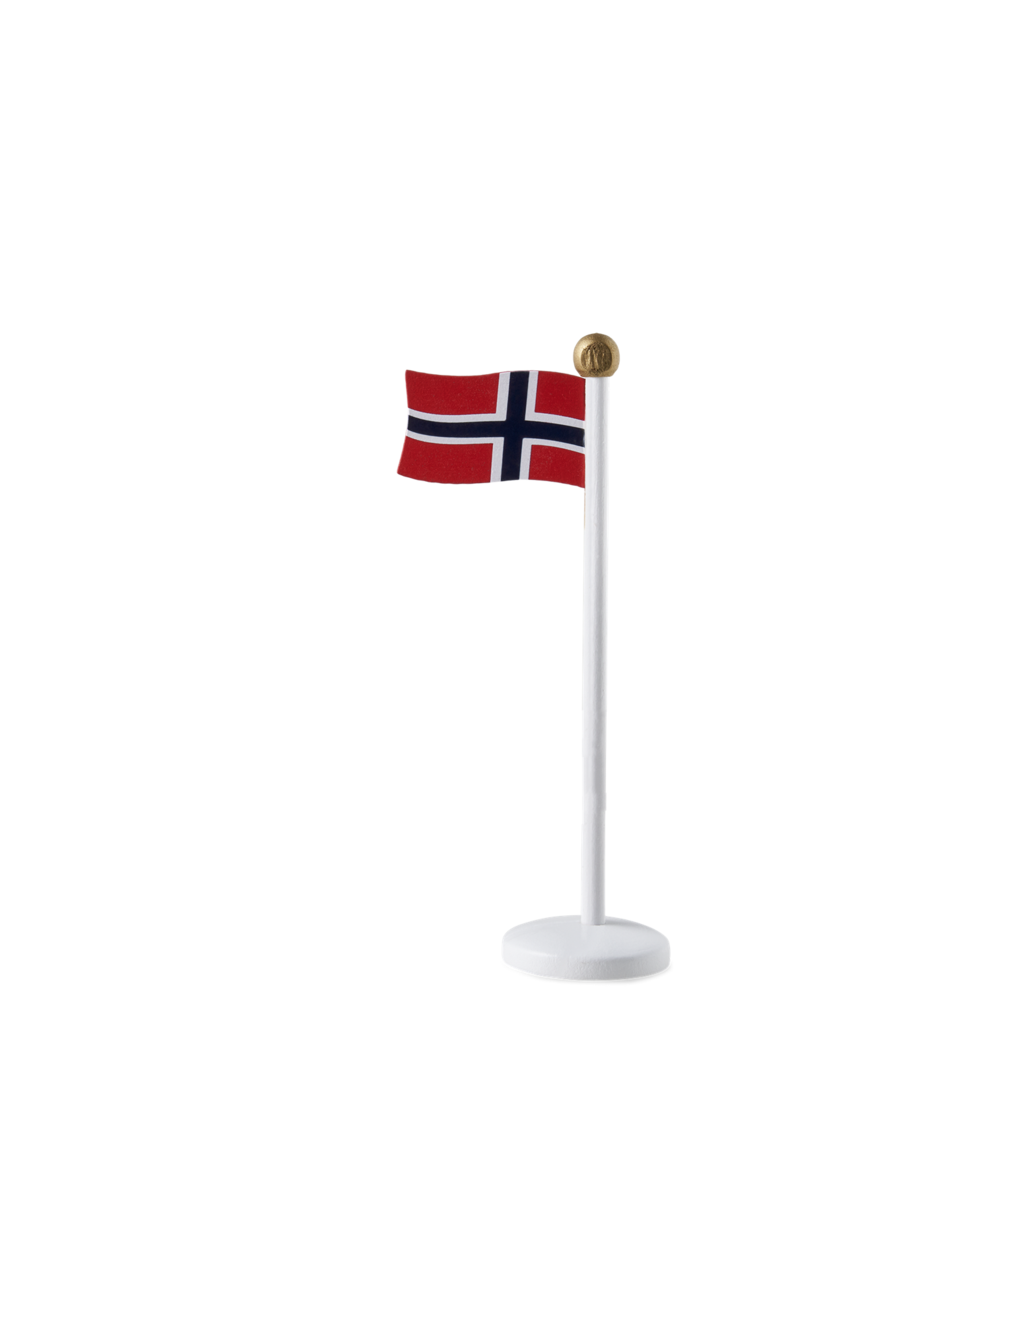 Tilbud: Norsk bordflagg kr 19,9 på Søstrene Grene